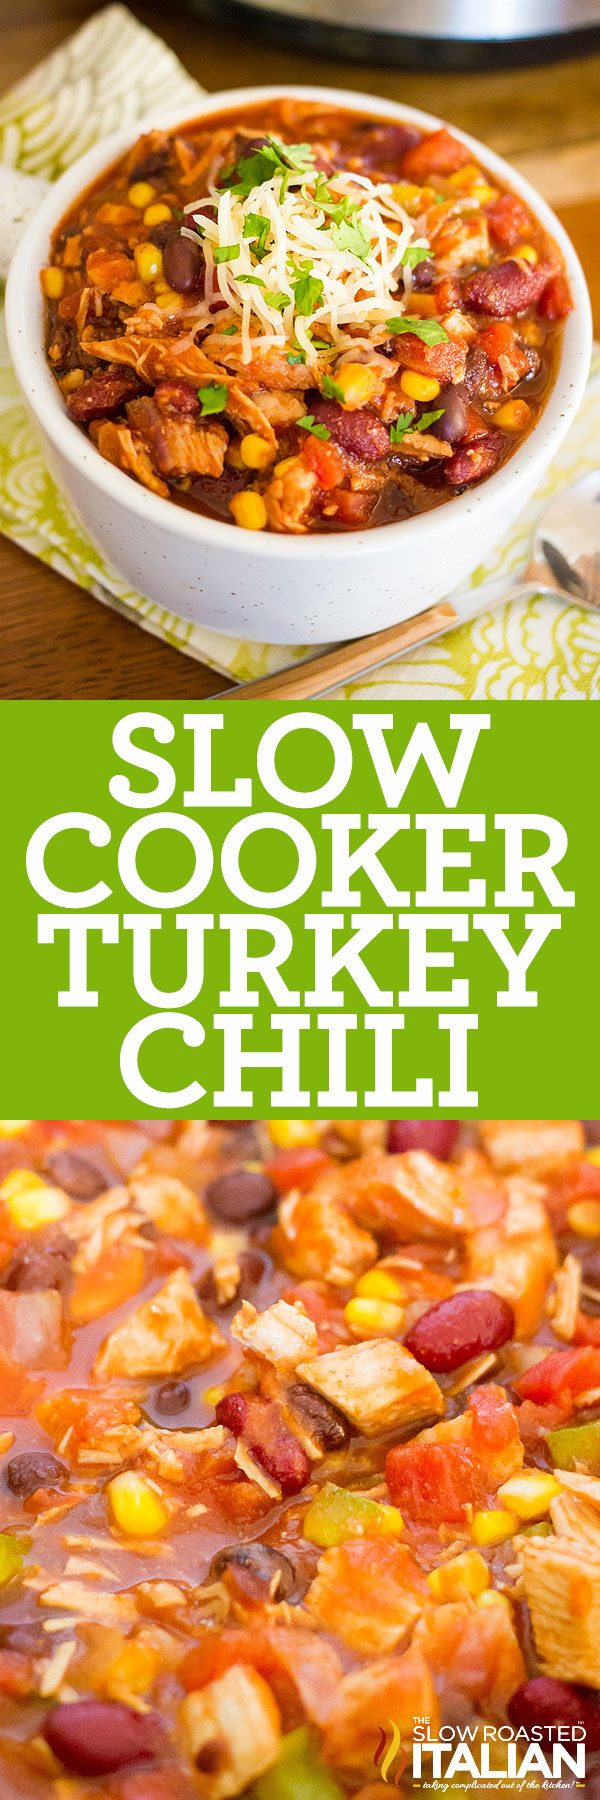 slow cooker turkey chili pin